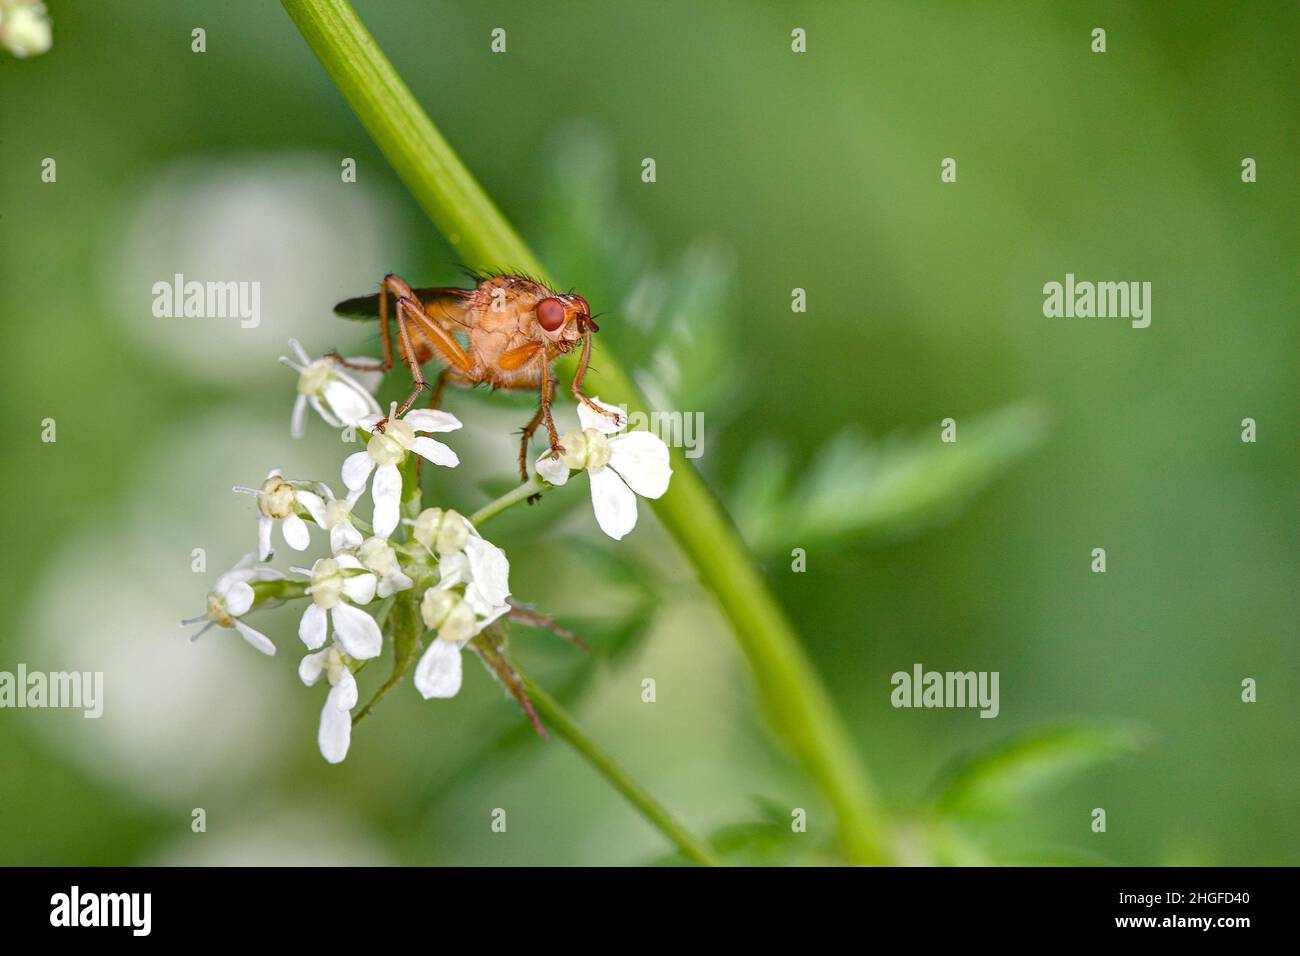 Regarde dans mes yeux.Une mouche à corne, Sciomyzidae, est assise sur les fleurs blanches d'un Meadowchervil. Banque D'Images